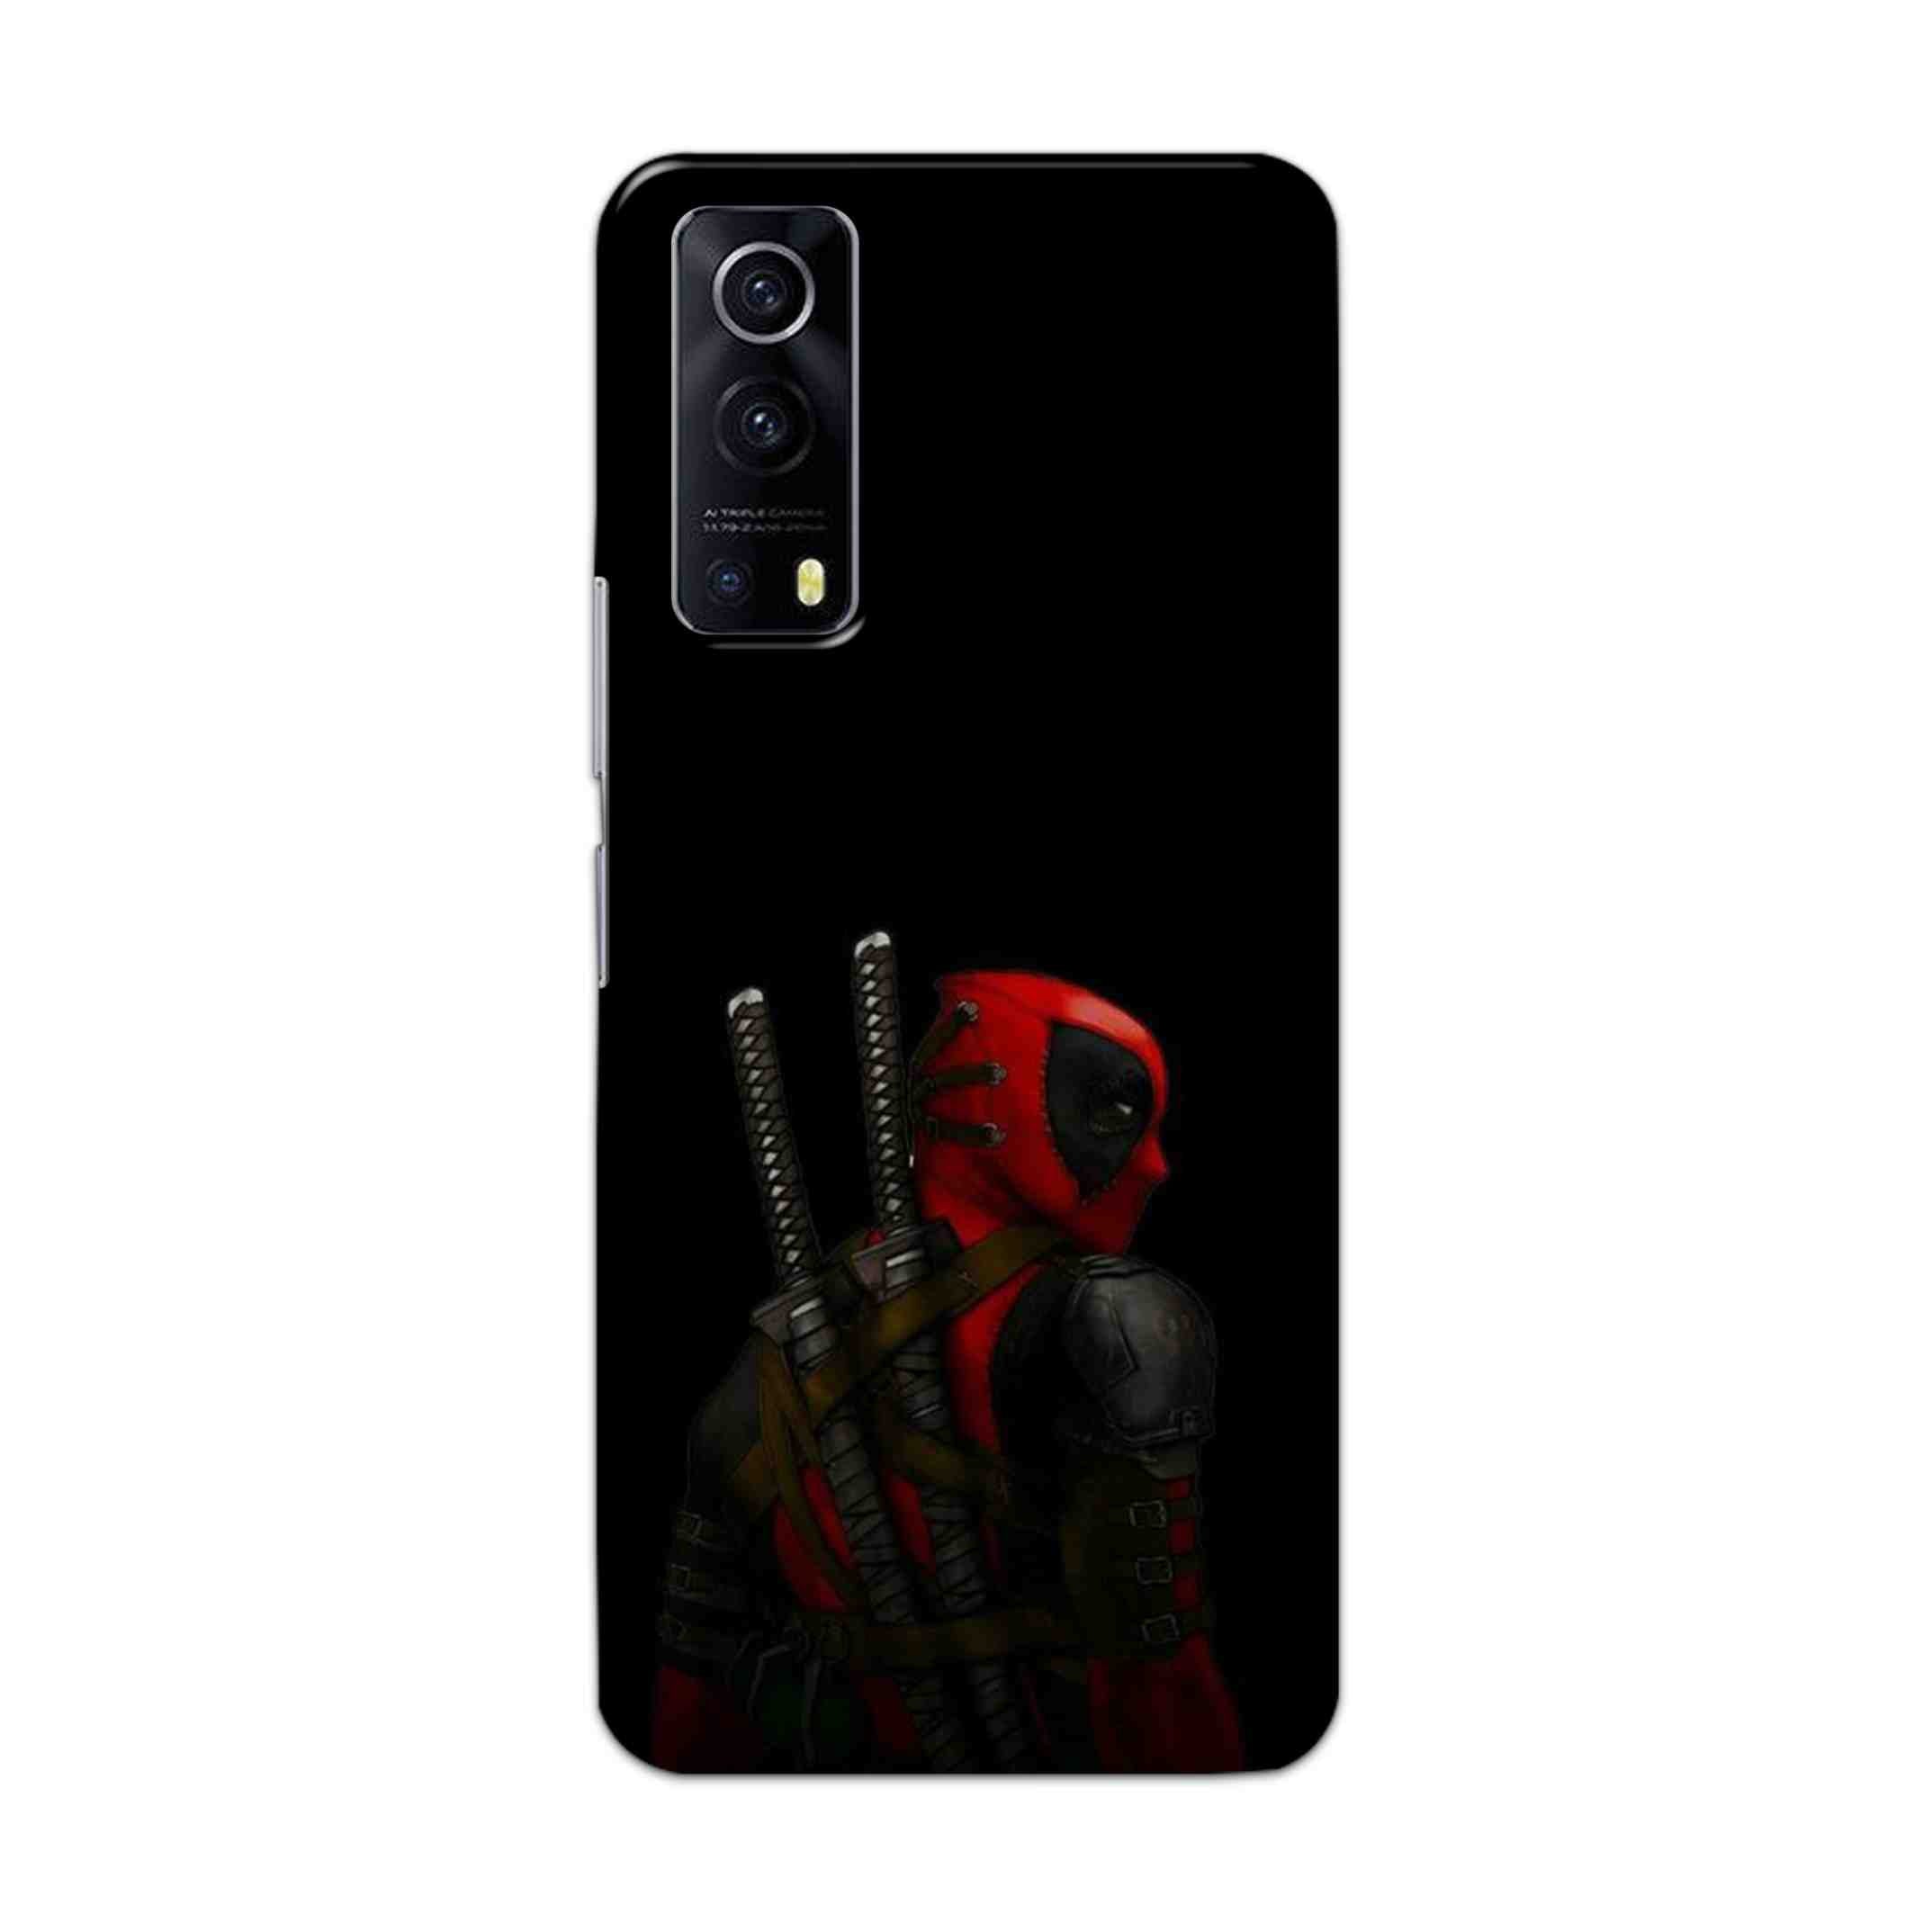 Buy Deadpool Hard Back Mobile Phone Case Cover For Vivo IQOO Z3 Online